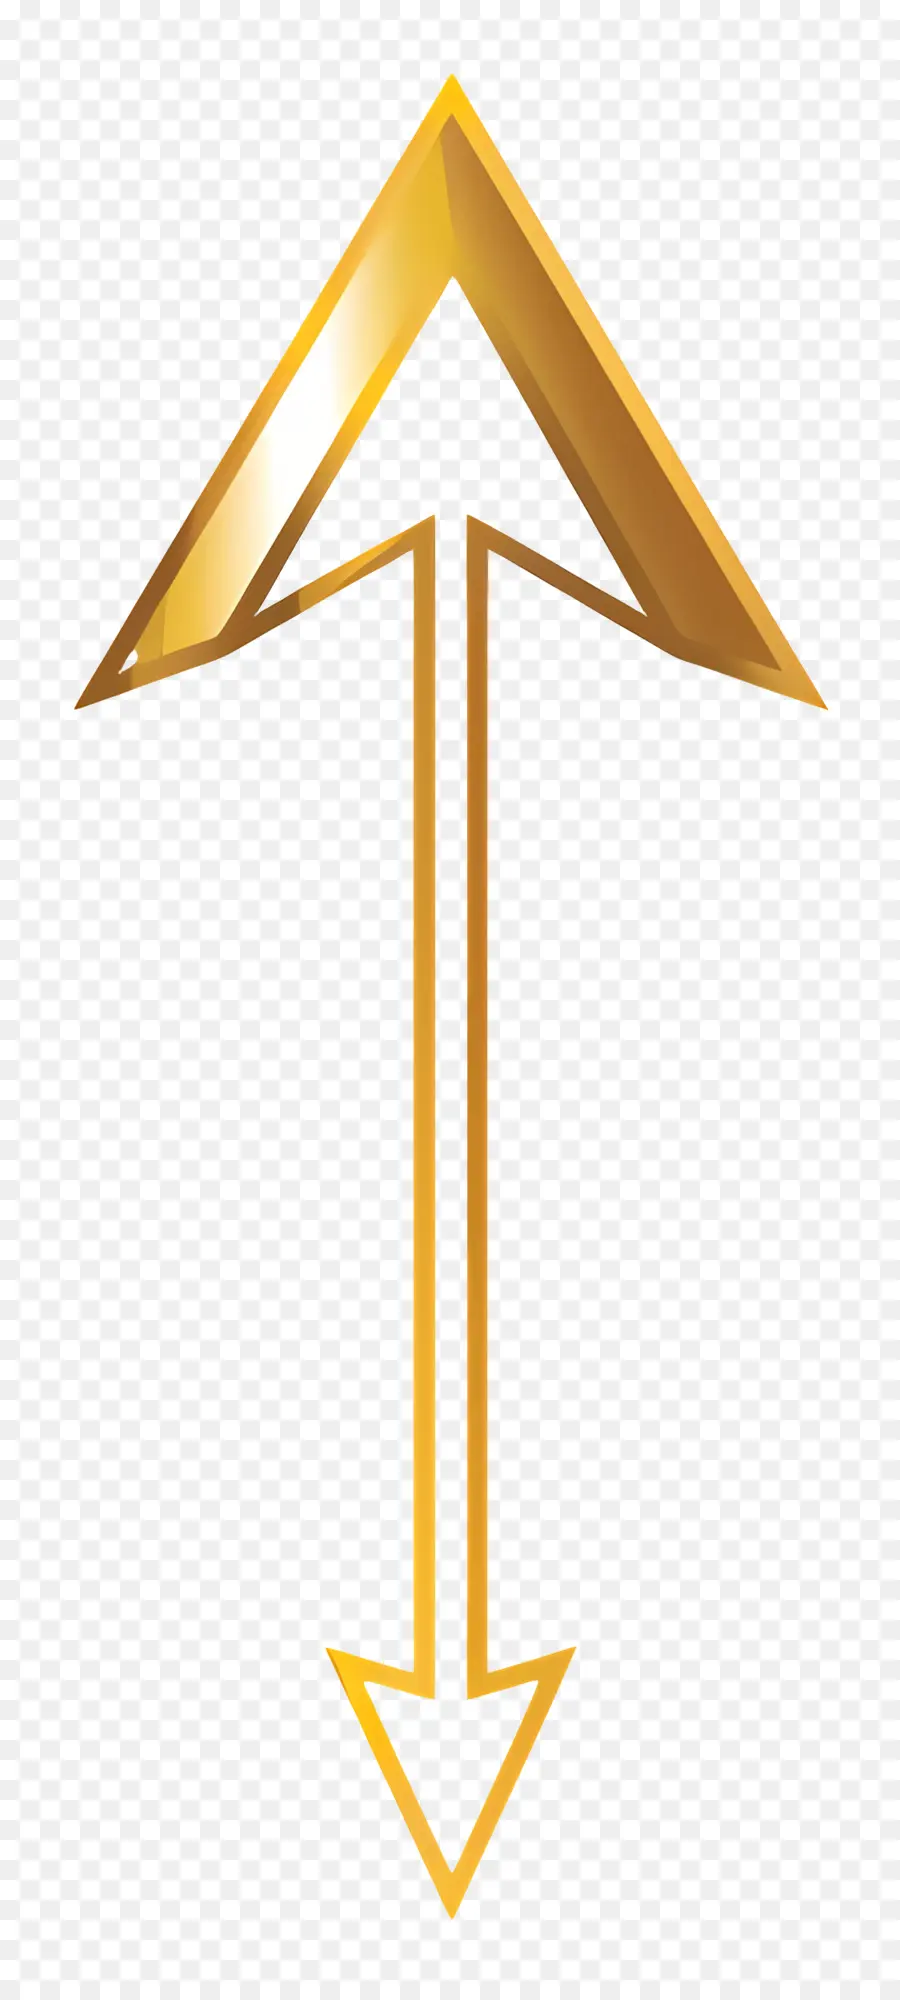 freccia oro - Freccia dorata rivolta verso il basso, design elegante